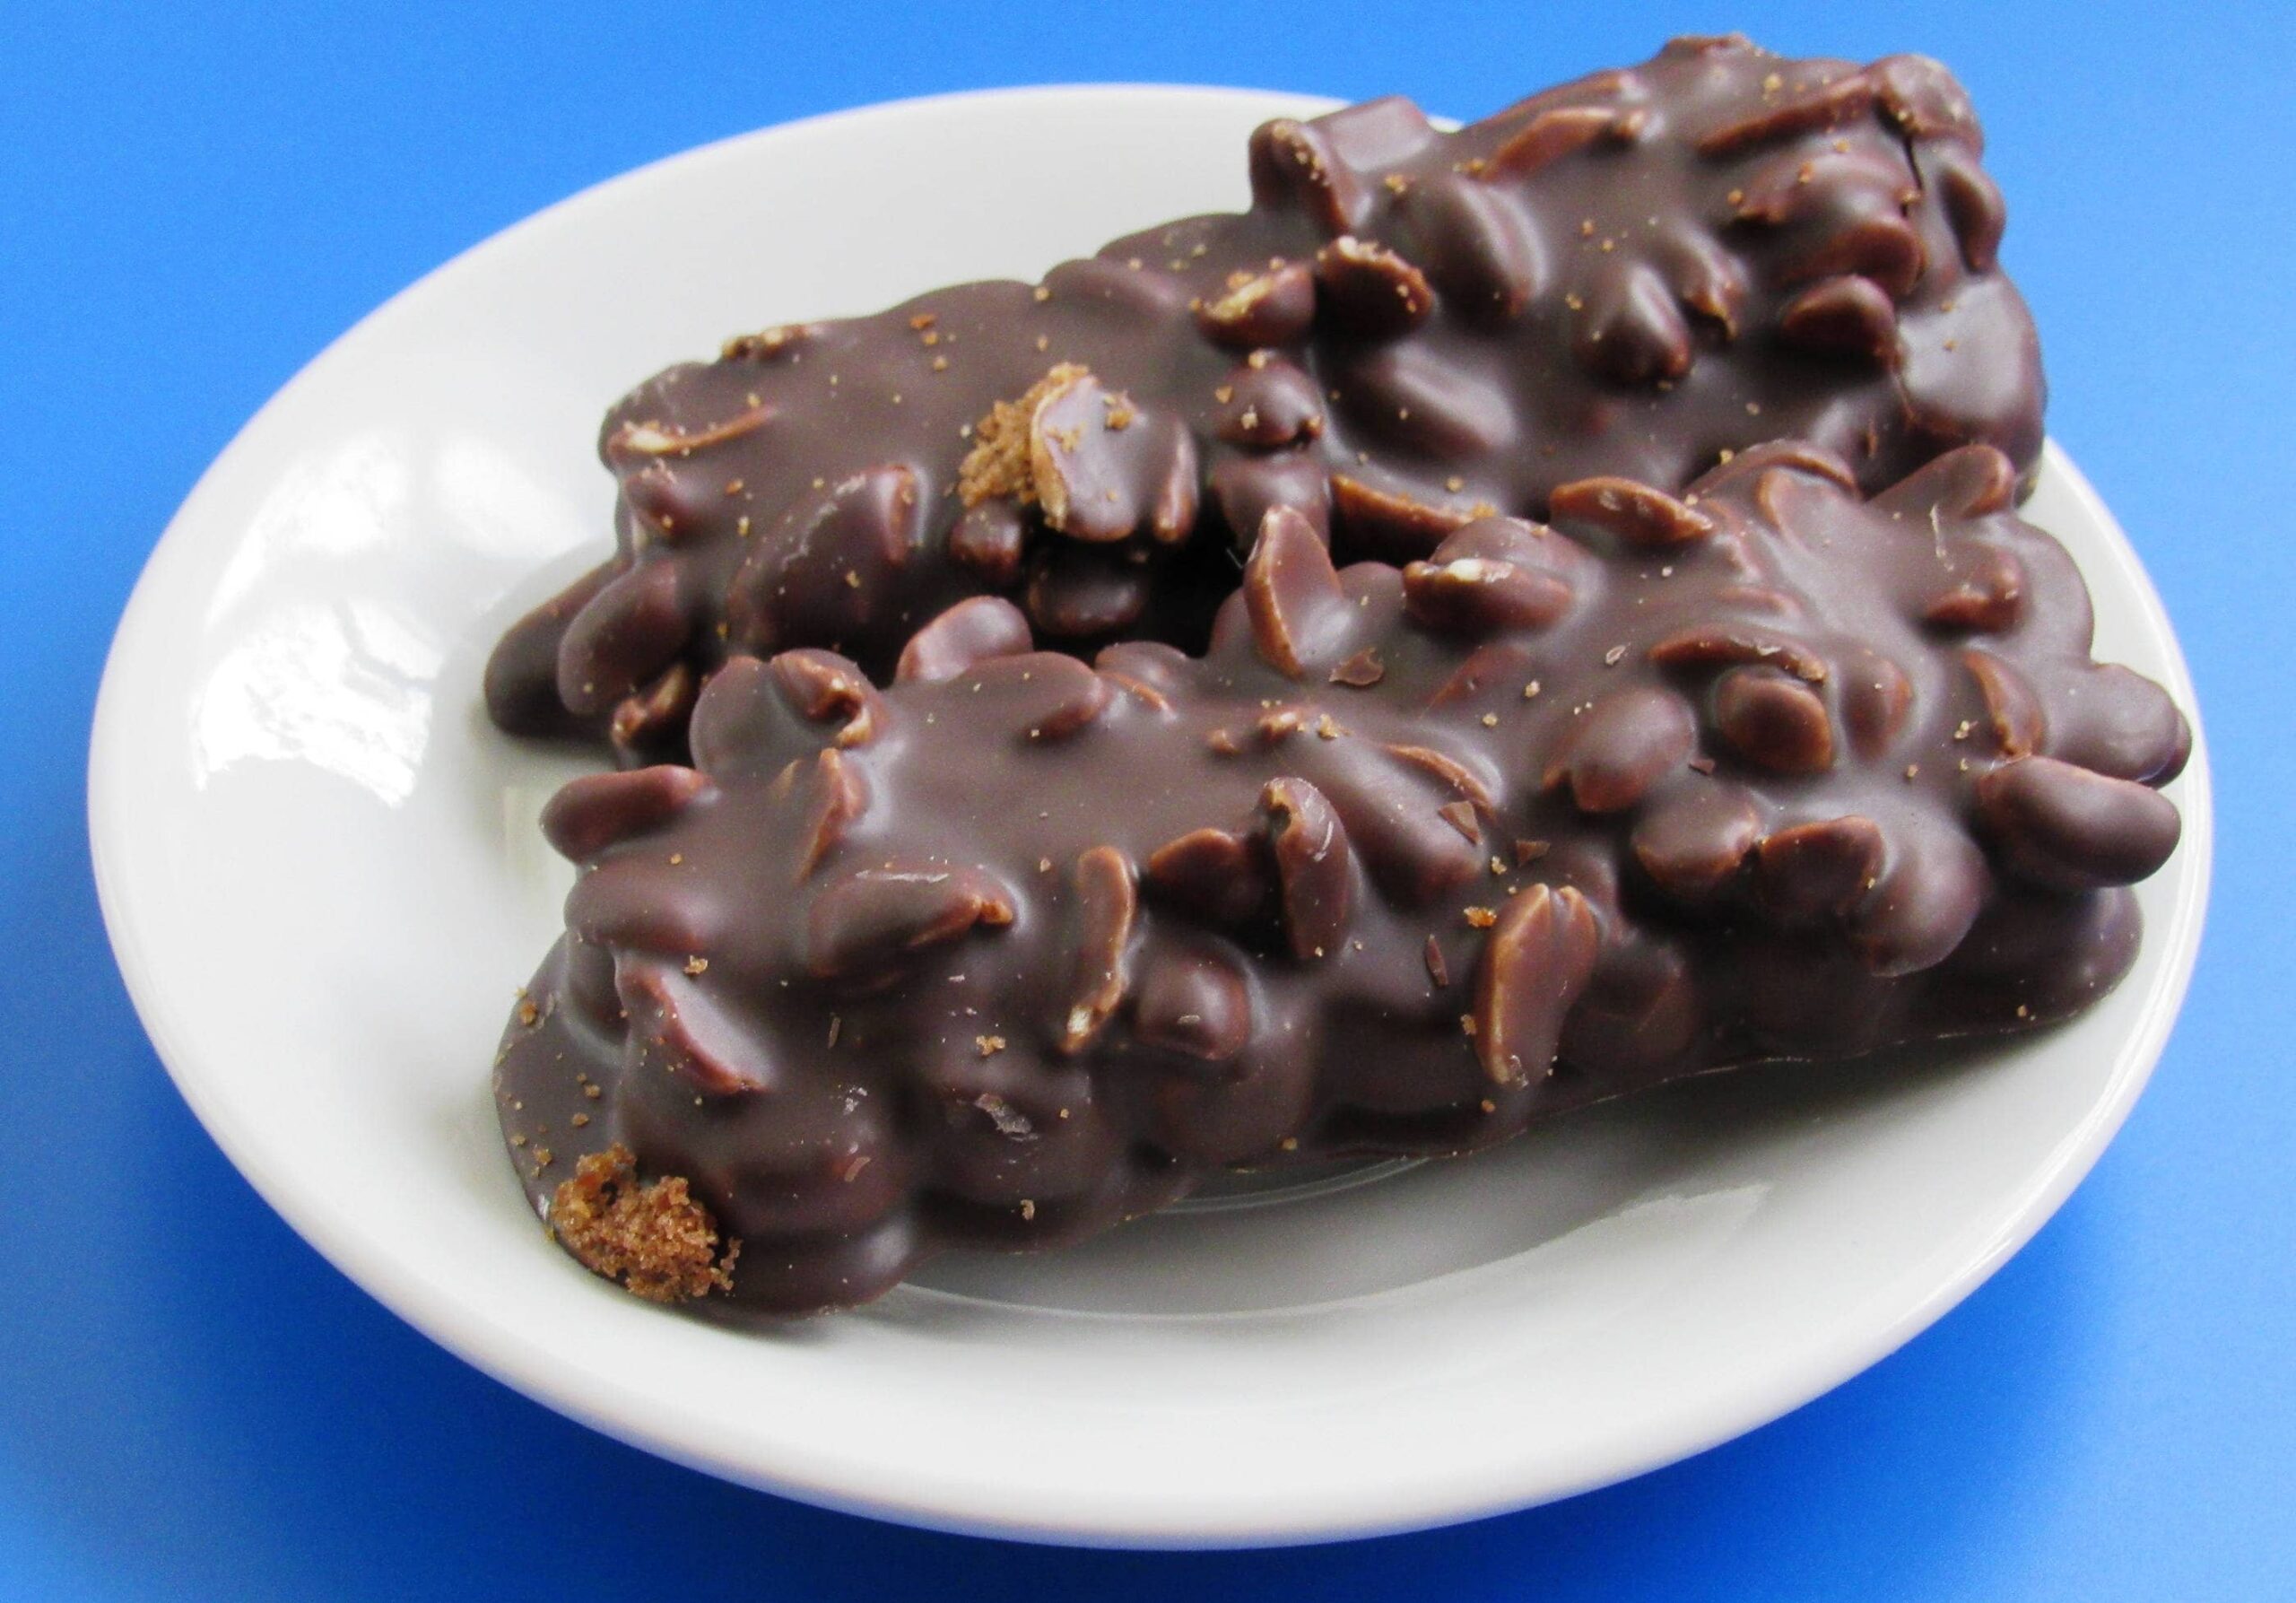 Печенье с арахисом в шоколаде